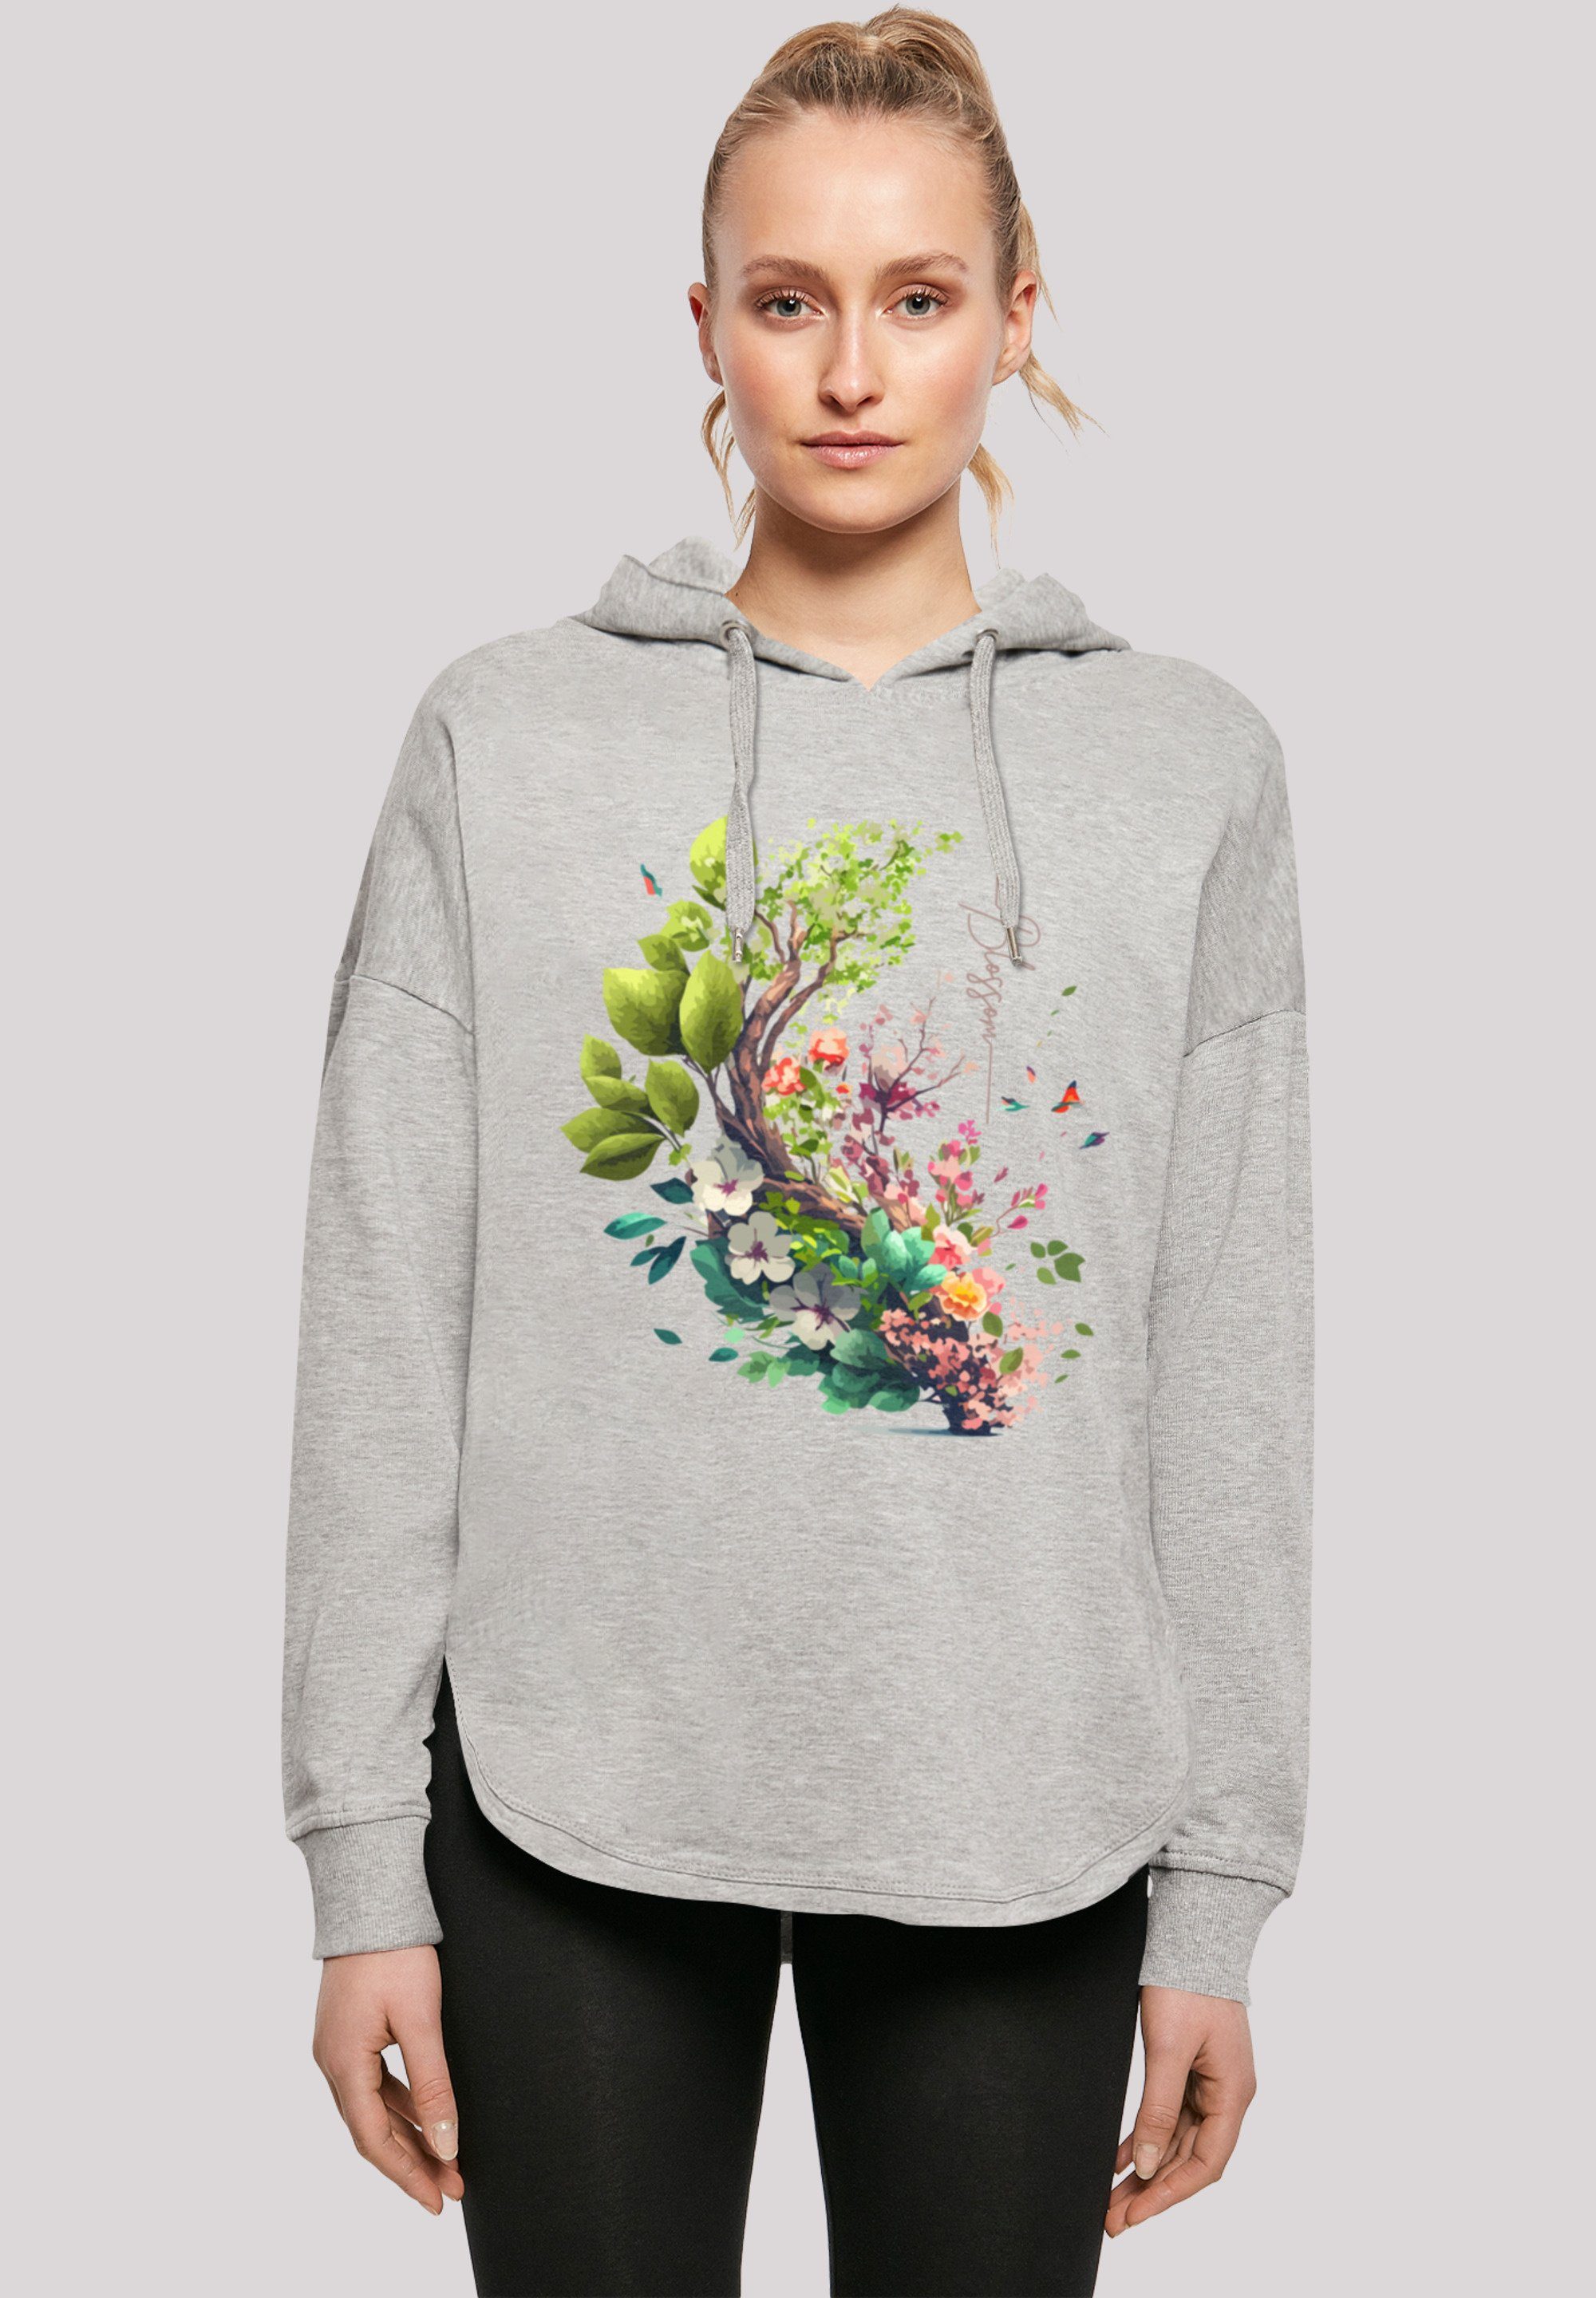 Top-Verkaufstipp F4NT4STIC Kapuzenpullover Baum mit Blumen Print Oversize Hoodie grey